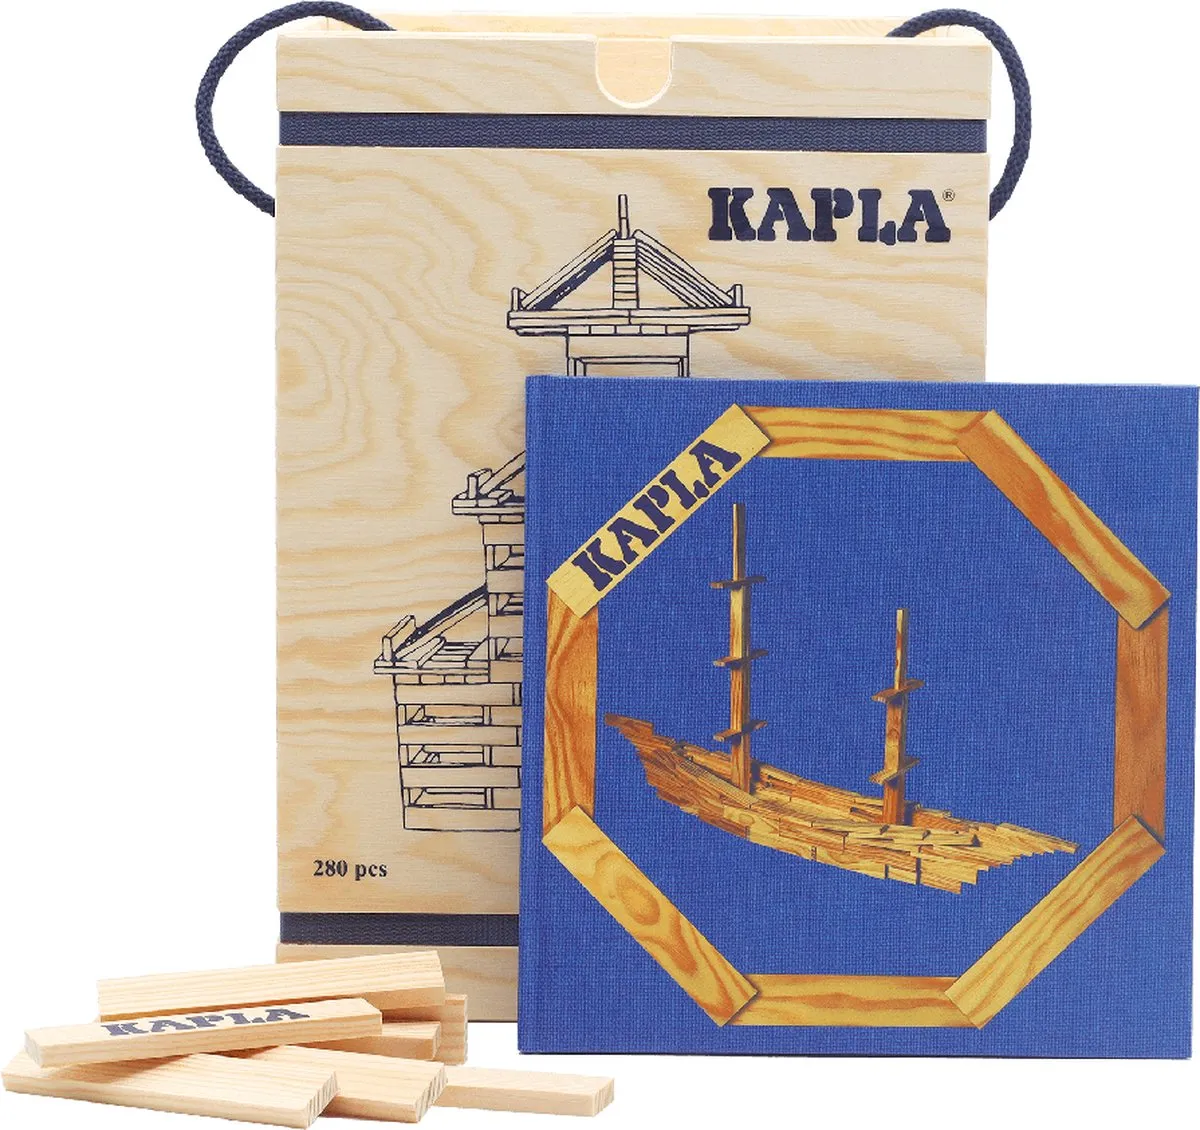 KAPLA - KAPLA Blank - Constructiespeelgoed - Blauw Voorbeeldboek - 280 Plankjes speelgoed